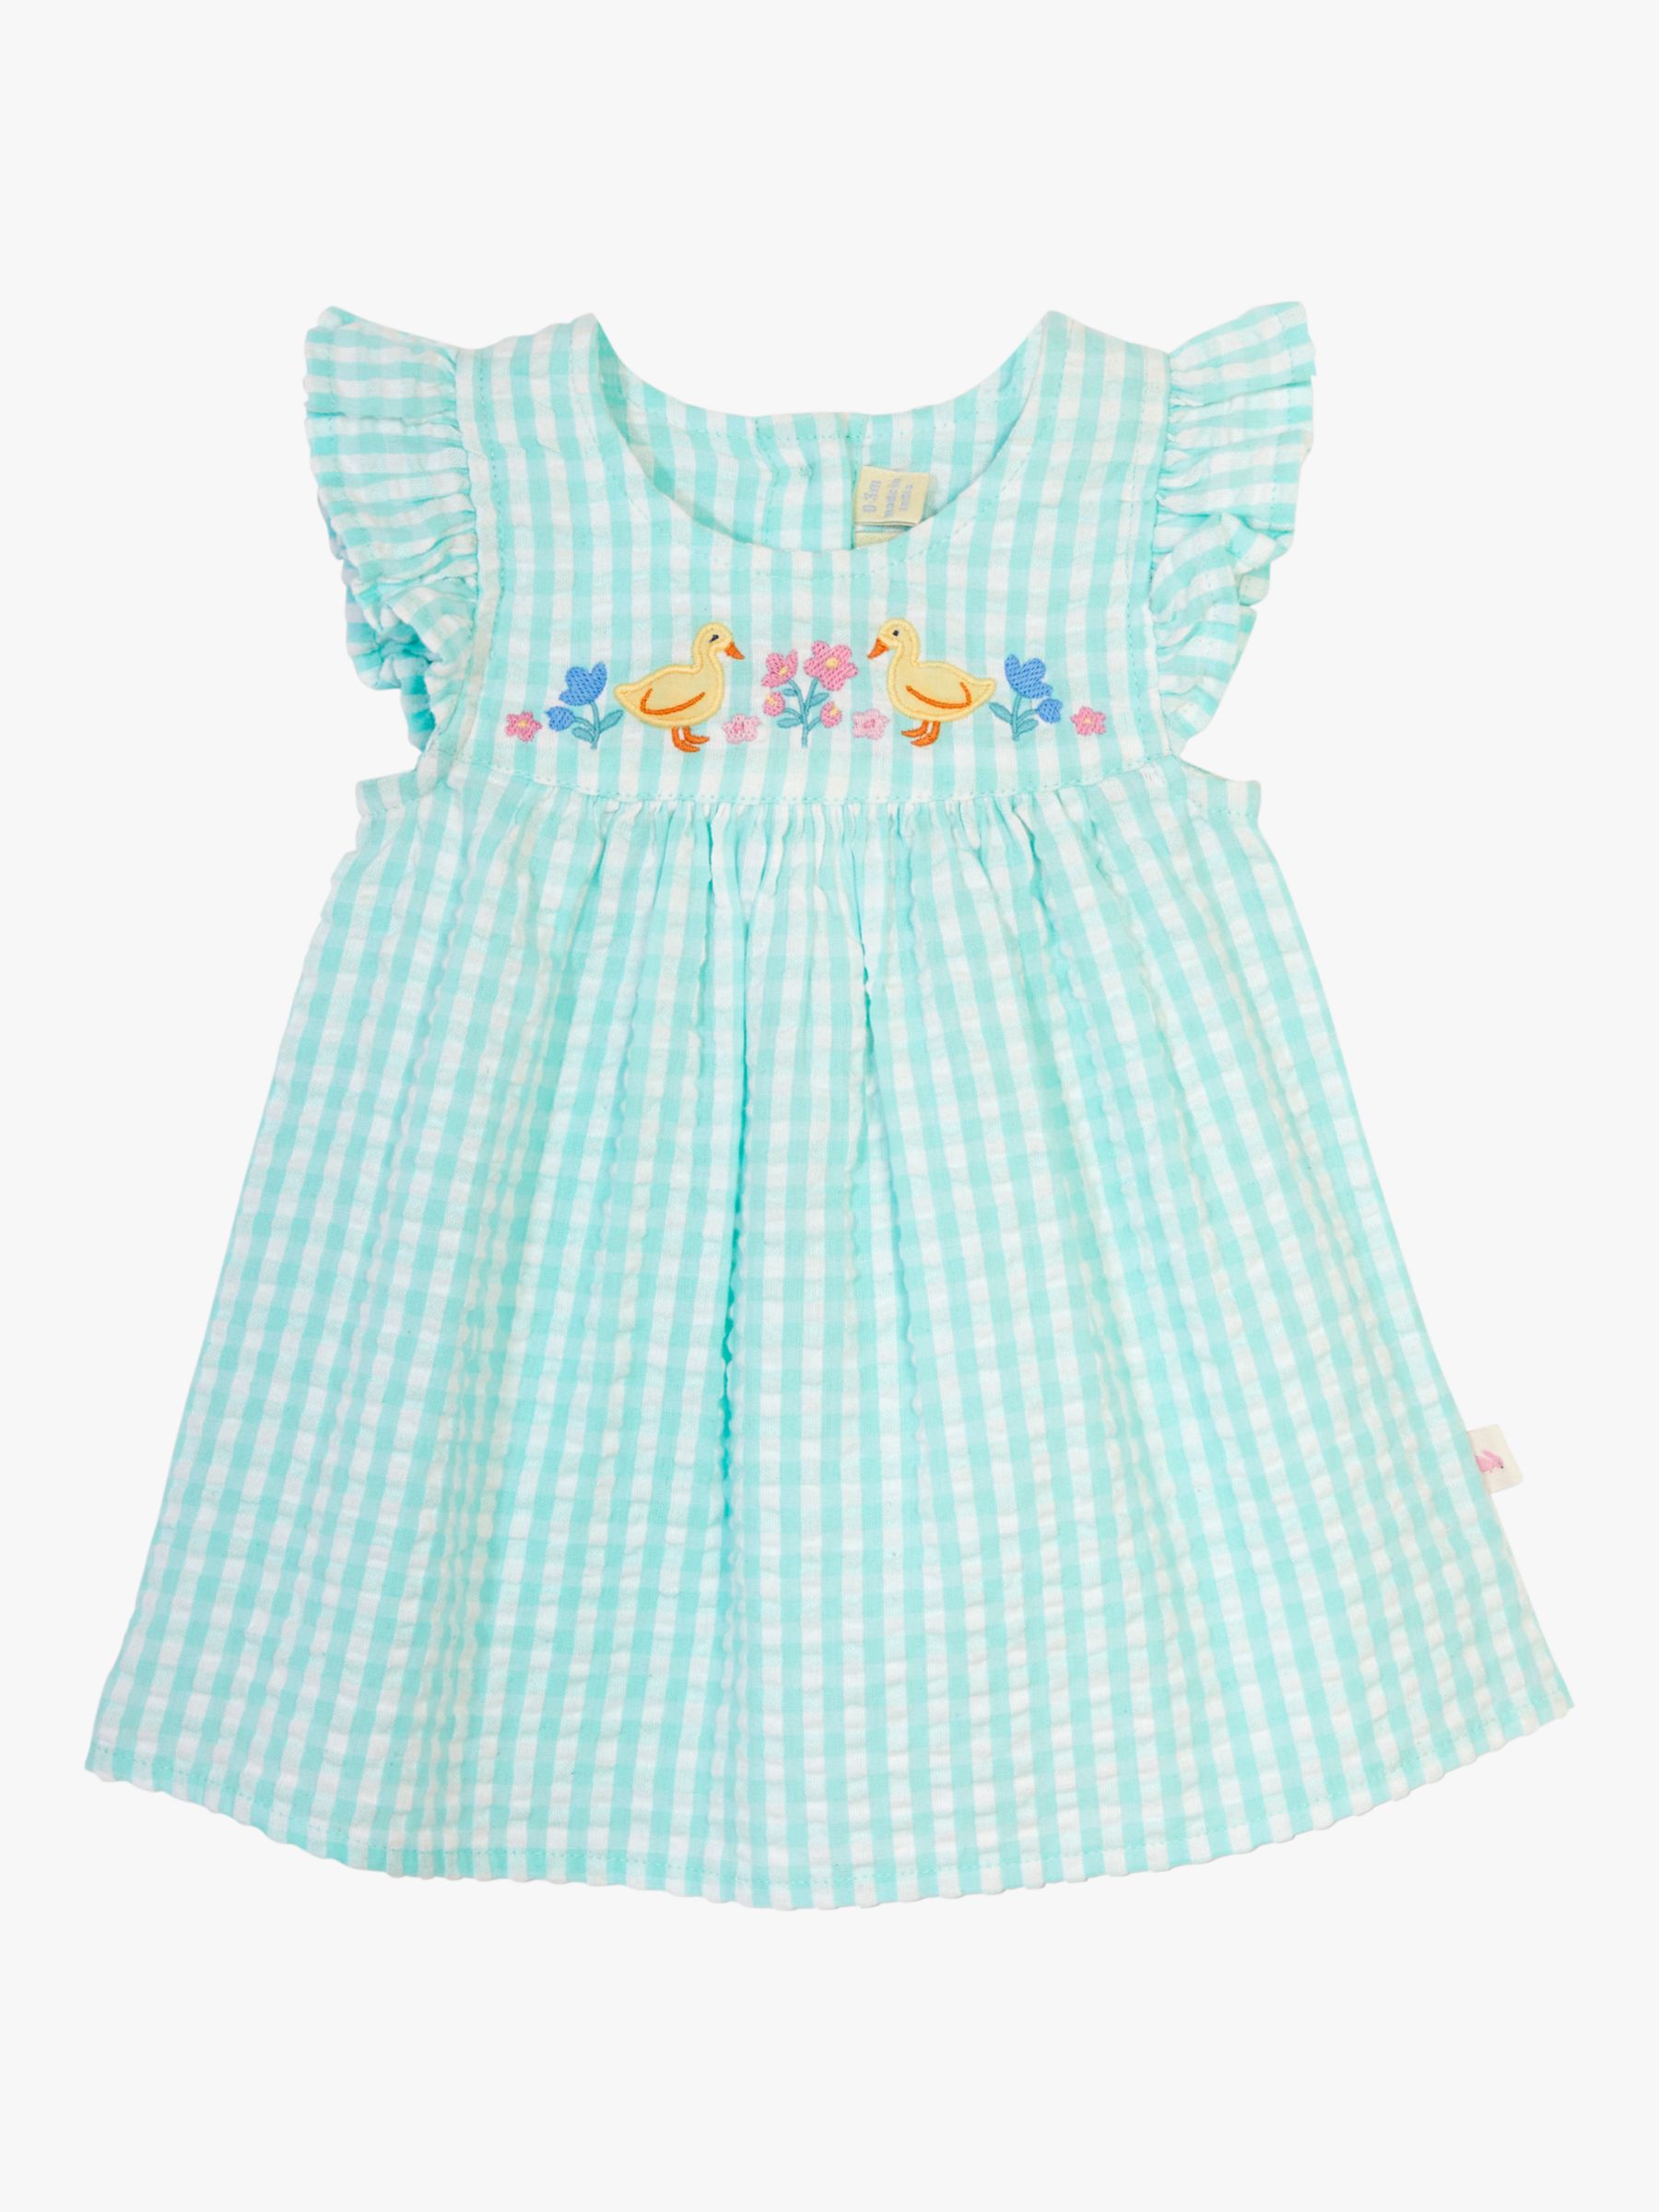 JoJo Maman Bébé Baby Gingham Duck Embroidered Dress & Bloomer & Hat Set, Duck Egg, 3-6 months